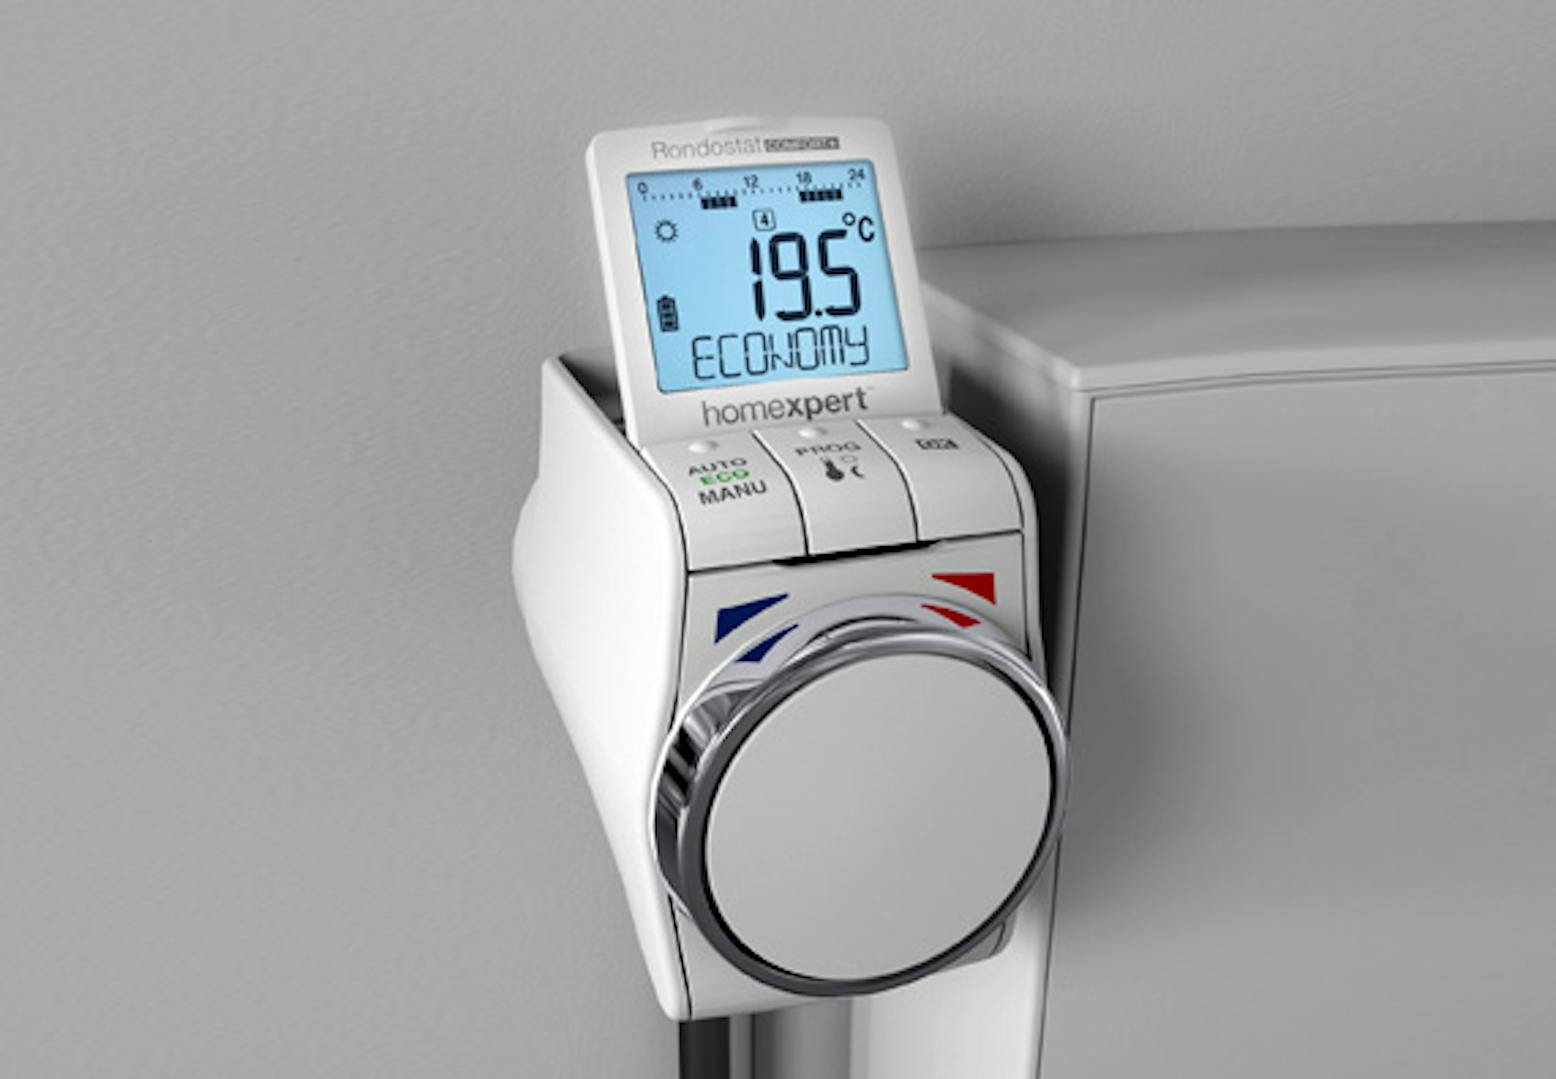 Kaufe Digitaler Temperaturregler Thermostat Heizung Kühlschalter